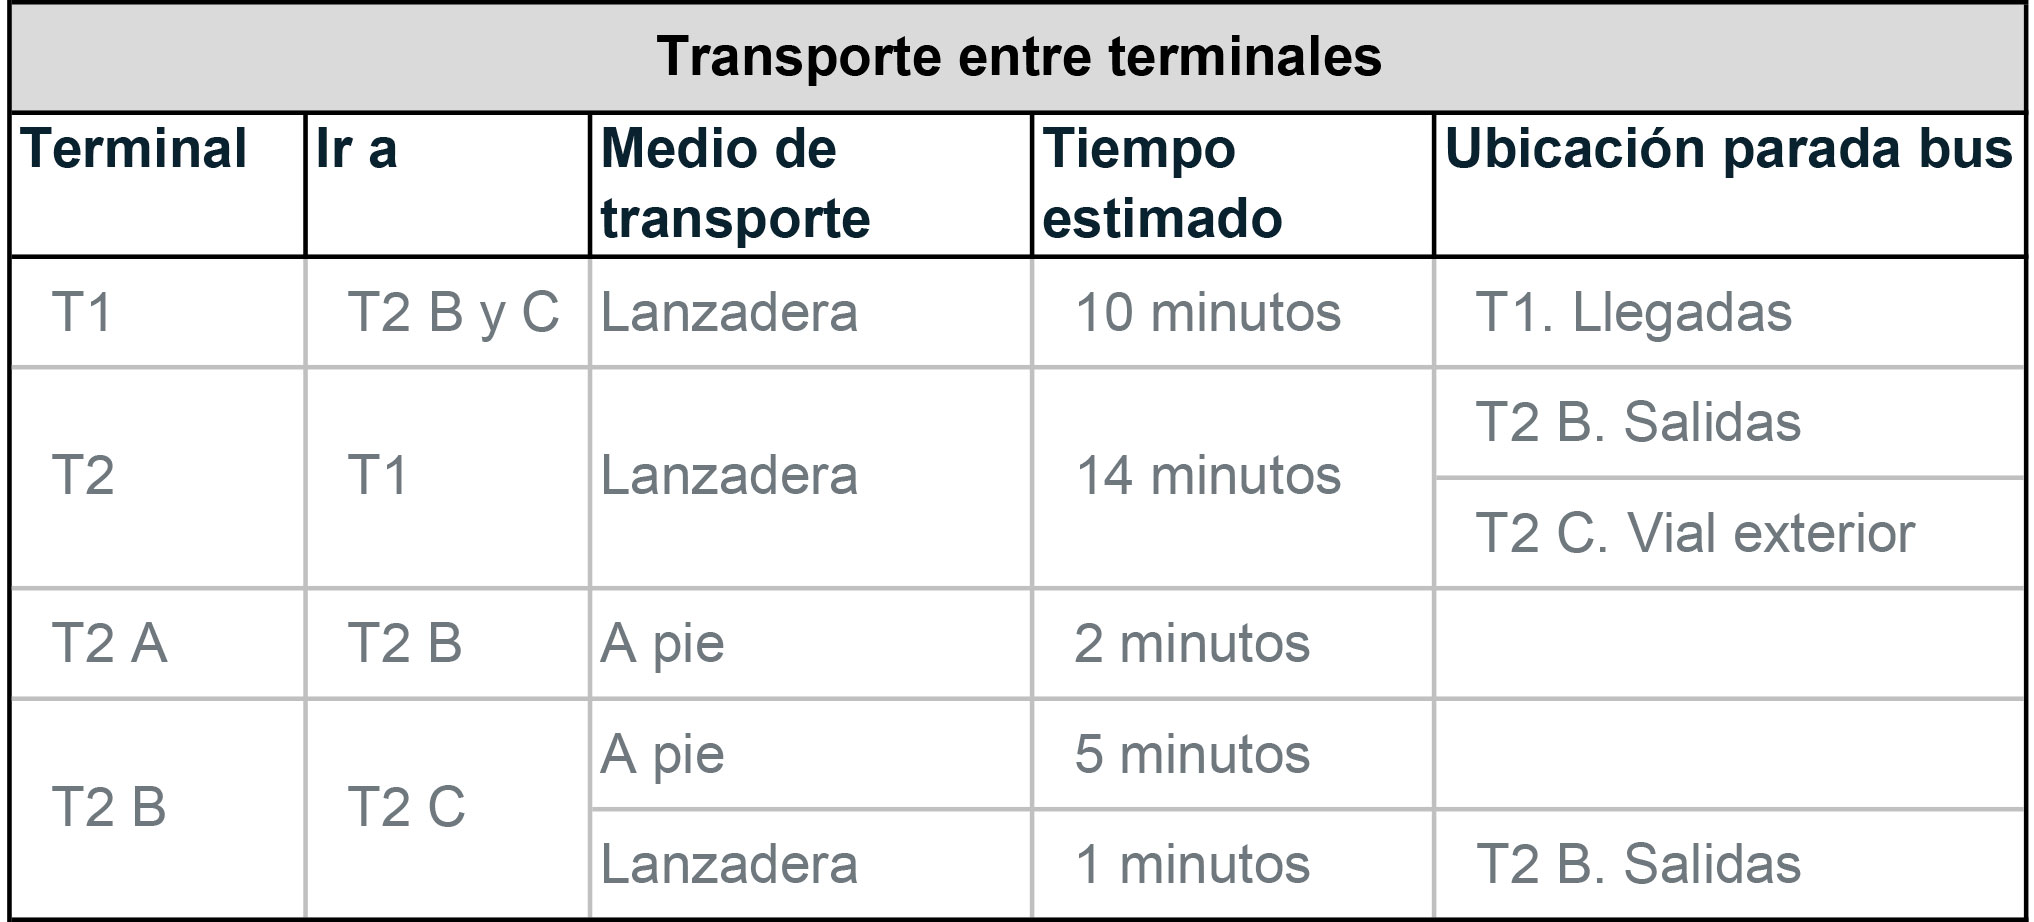 Tiempo entre terminales by Gratis in Barcelona